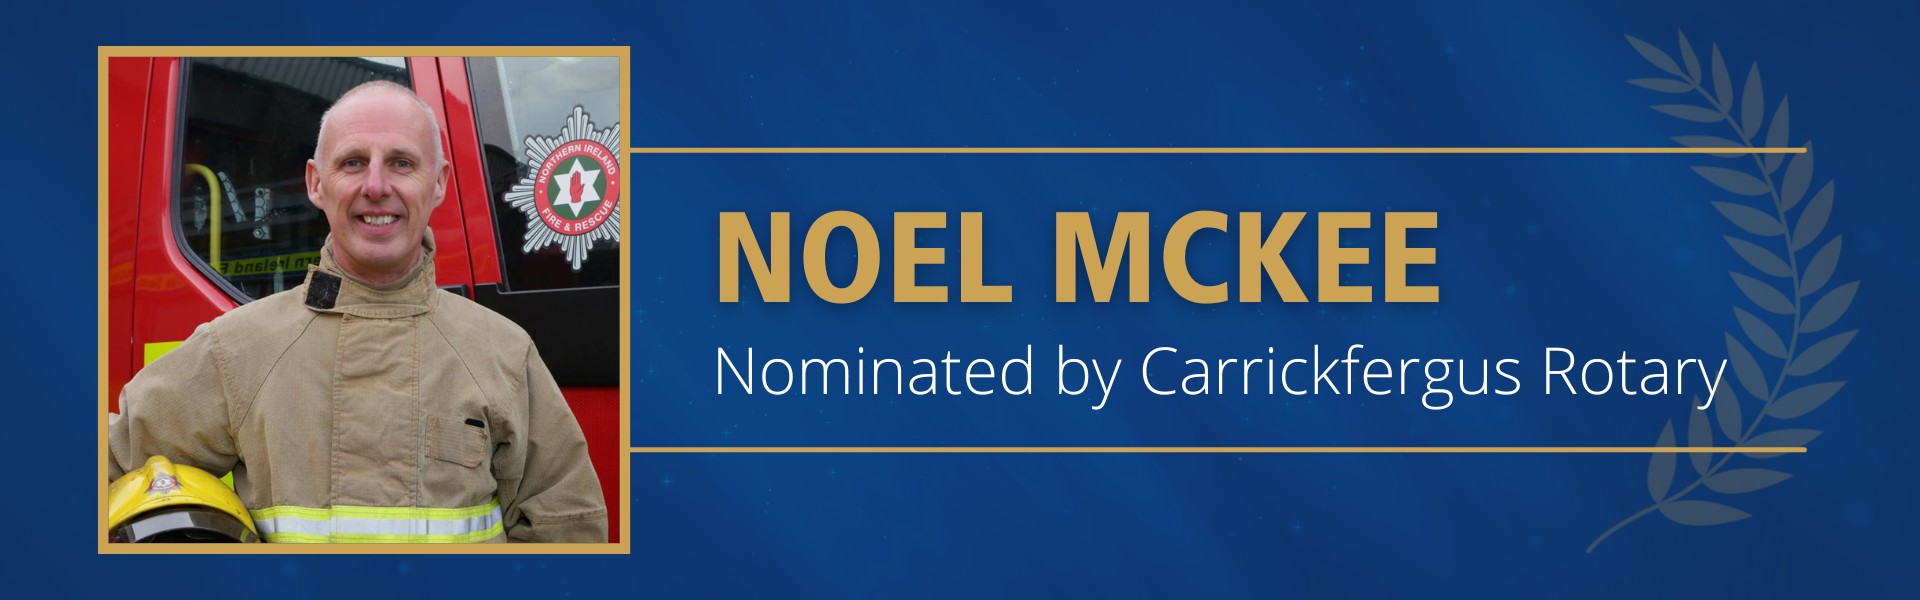 Noel William McKee OBE Nominated by Carrickfergus Rotary